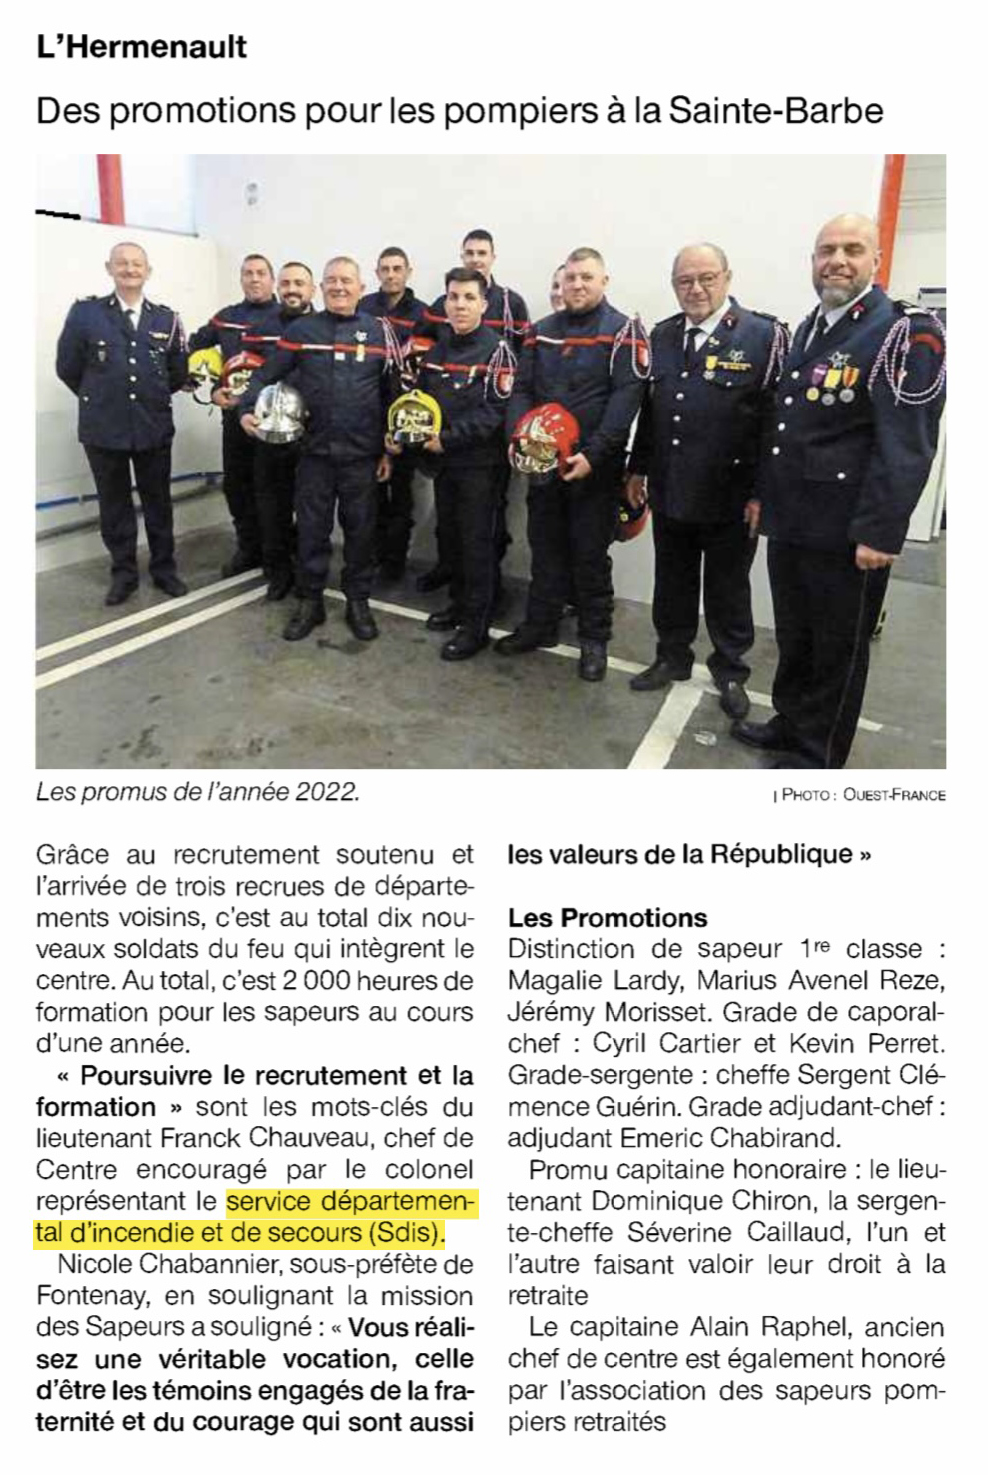 L’Hermenault : Des promotions pour les pompiers à la Sainte-Barbe